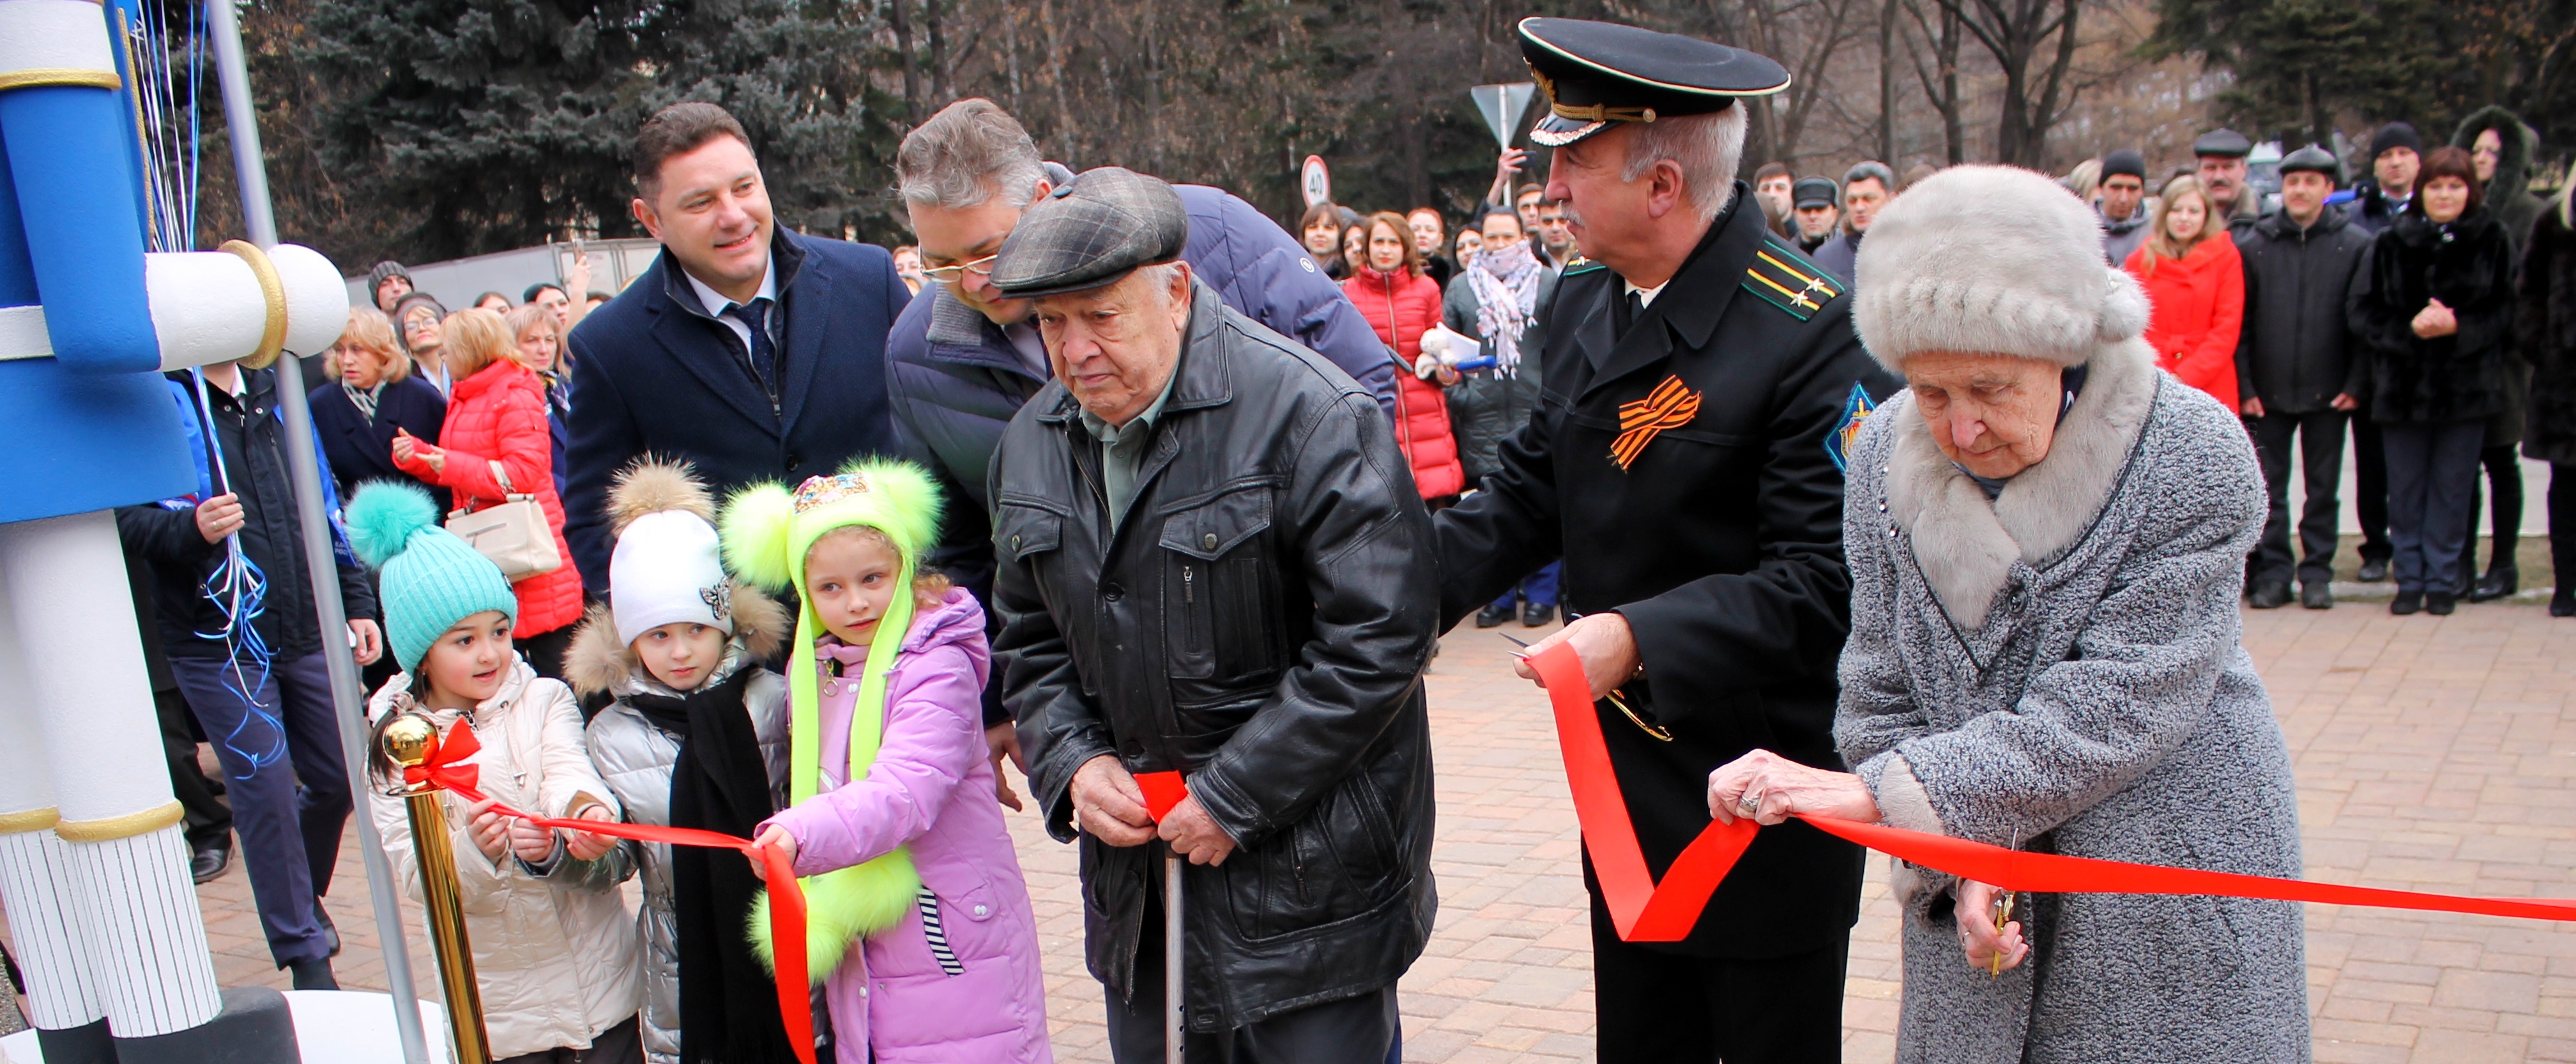 Сквер Победы торжественно открыли в Кисловодске в день 76-летней годовщины освобождения города от немецко-фашистских захватчиков